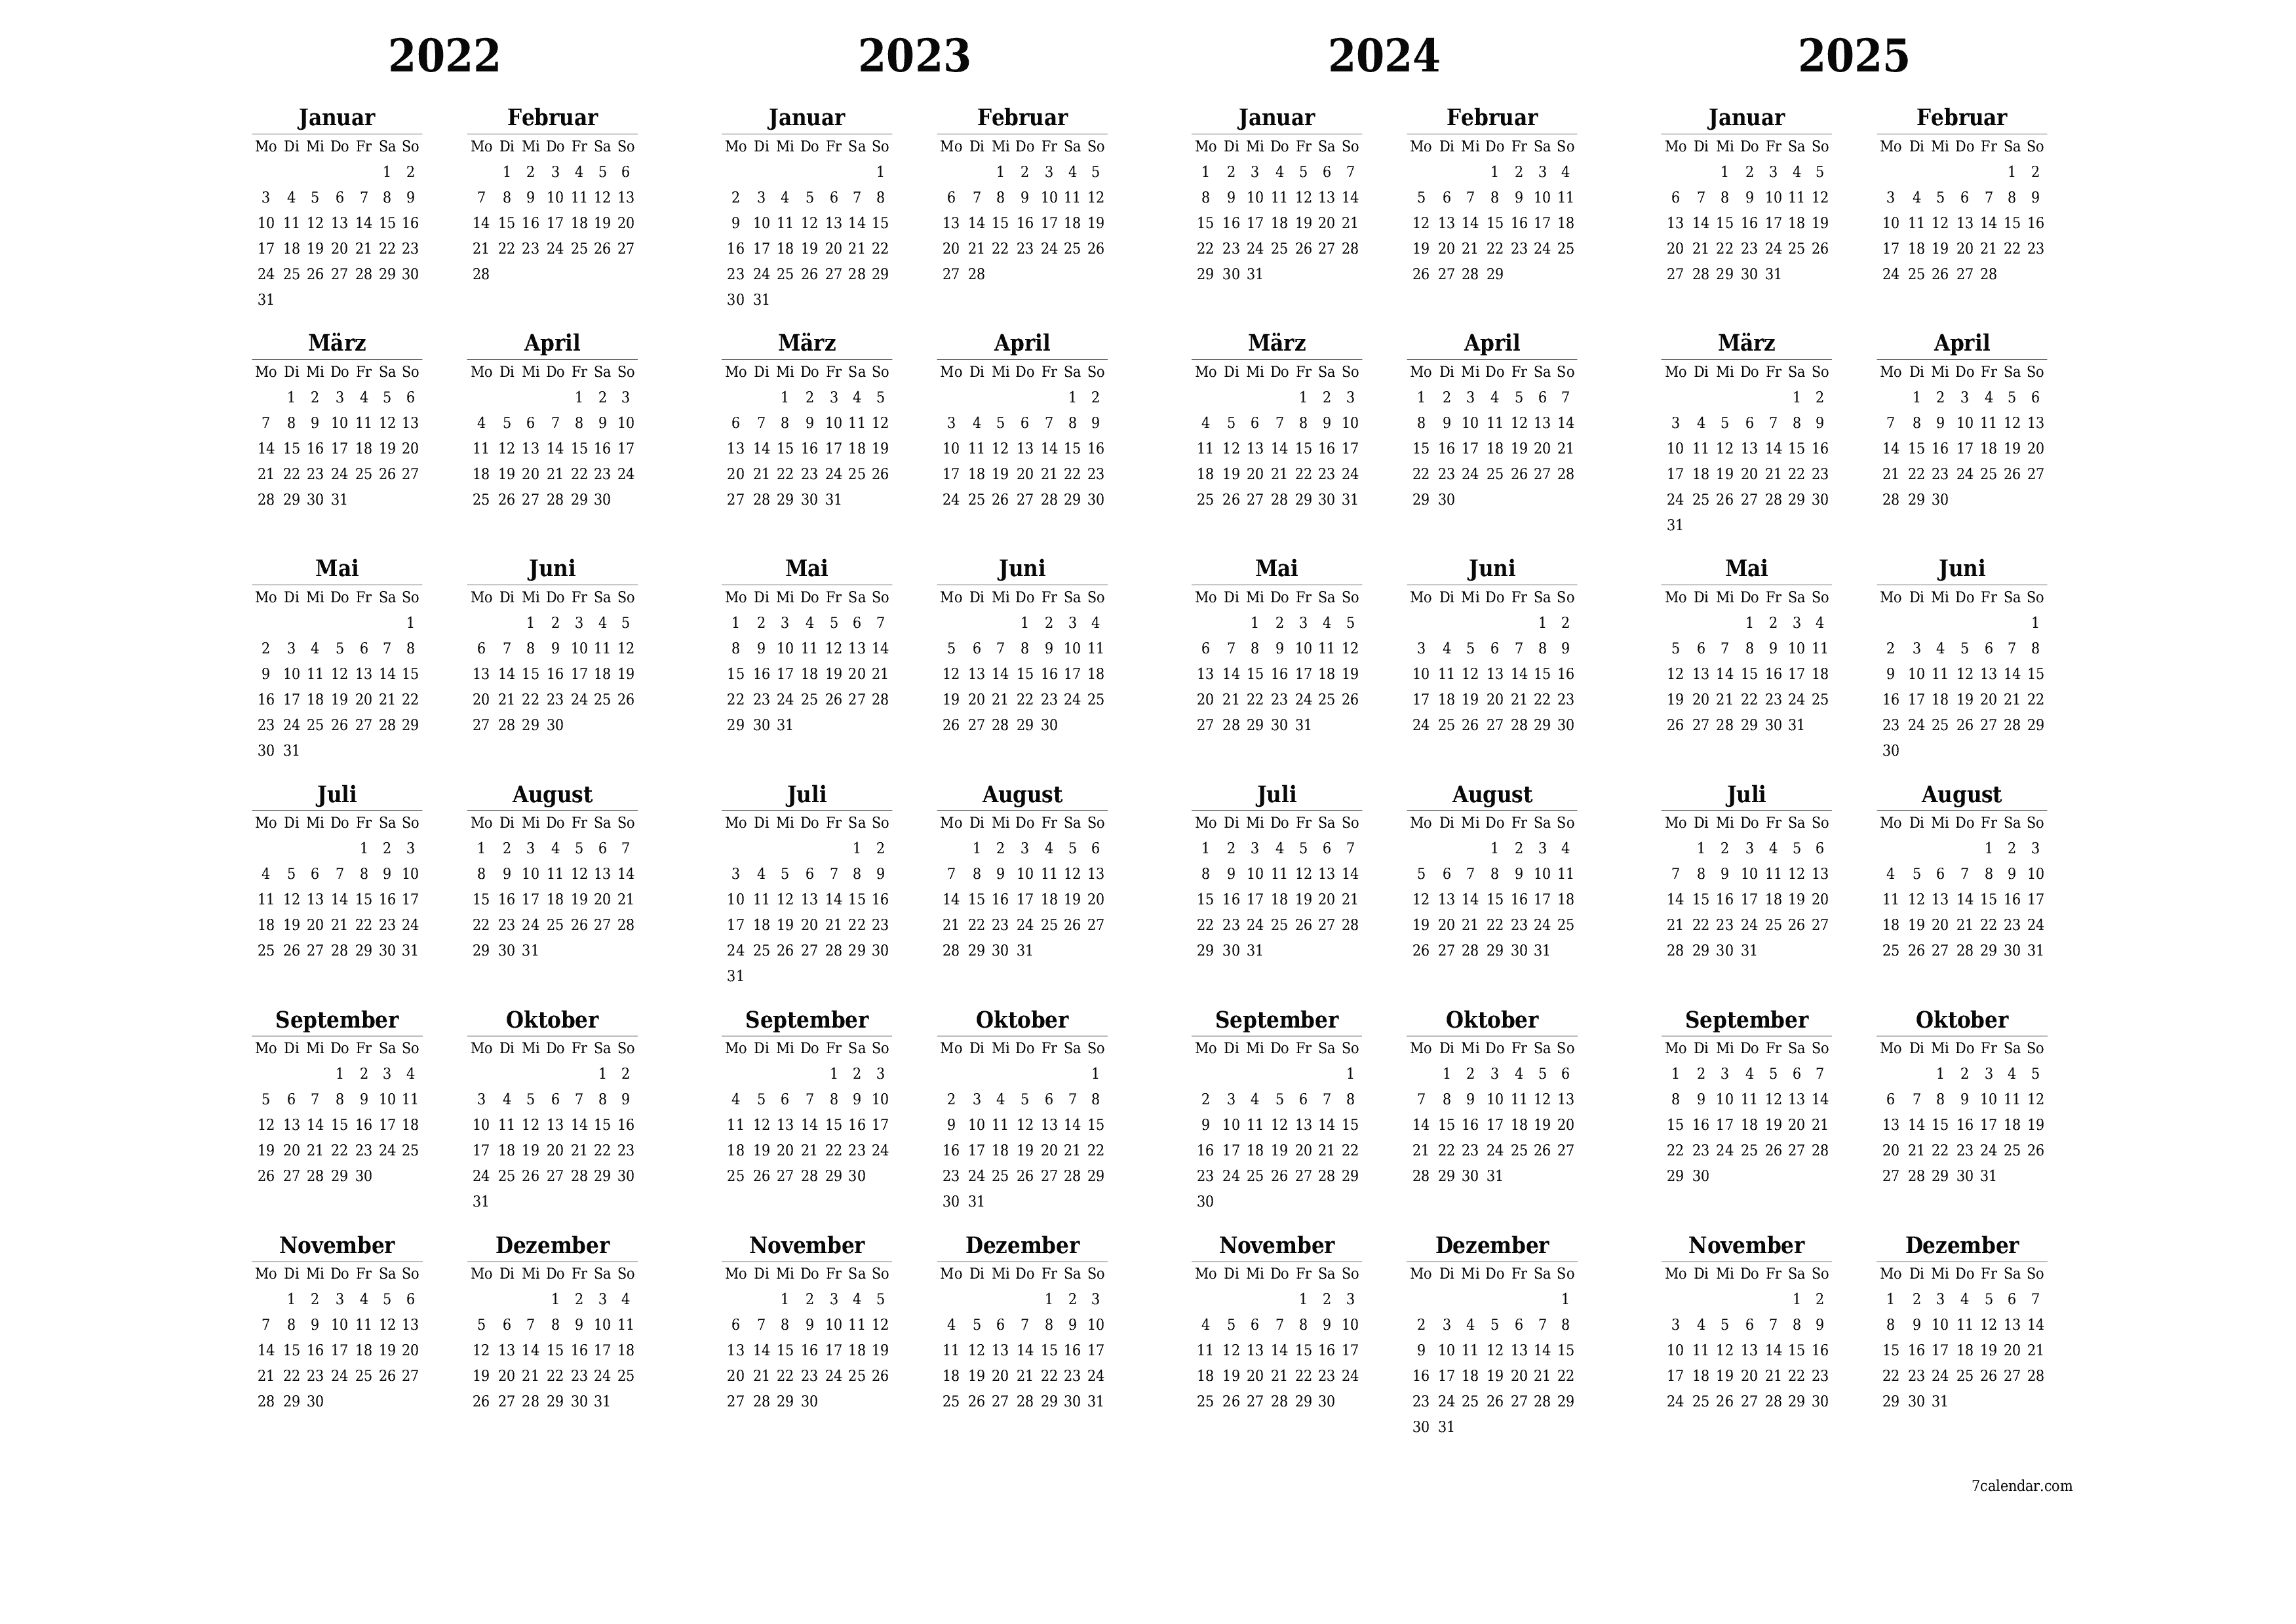 Jahresplanerkalender für das Jahr 2022, 2023, 2024, 2025 mit Notizen leeren, speichern und als PDF PNG German - 7calendar.com drucken